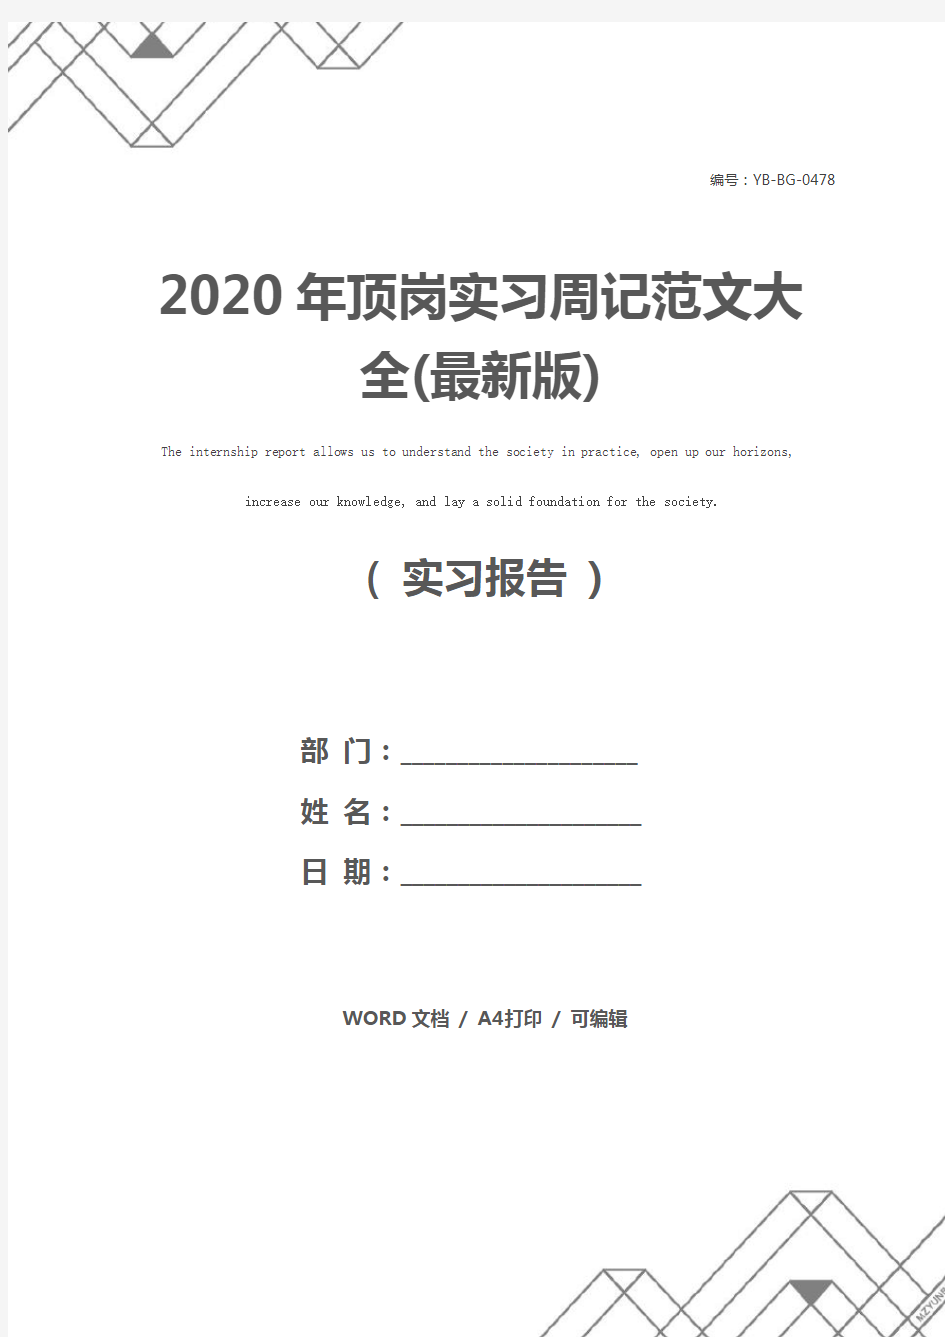 2020年顶岗实习周记范文大全(最新版)